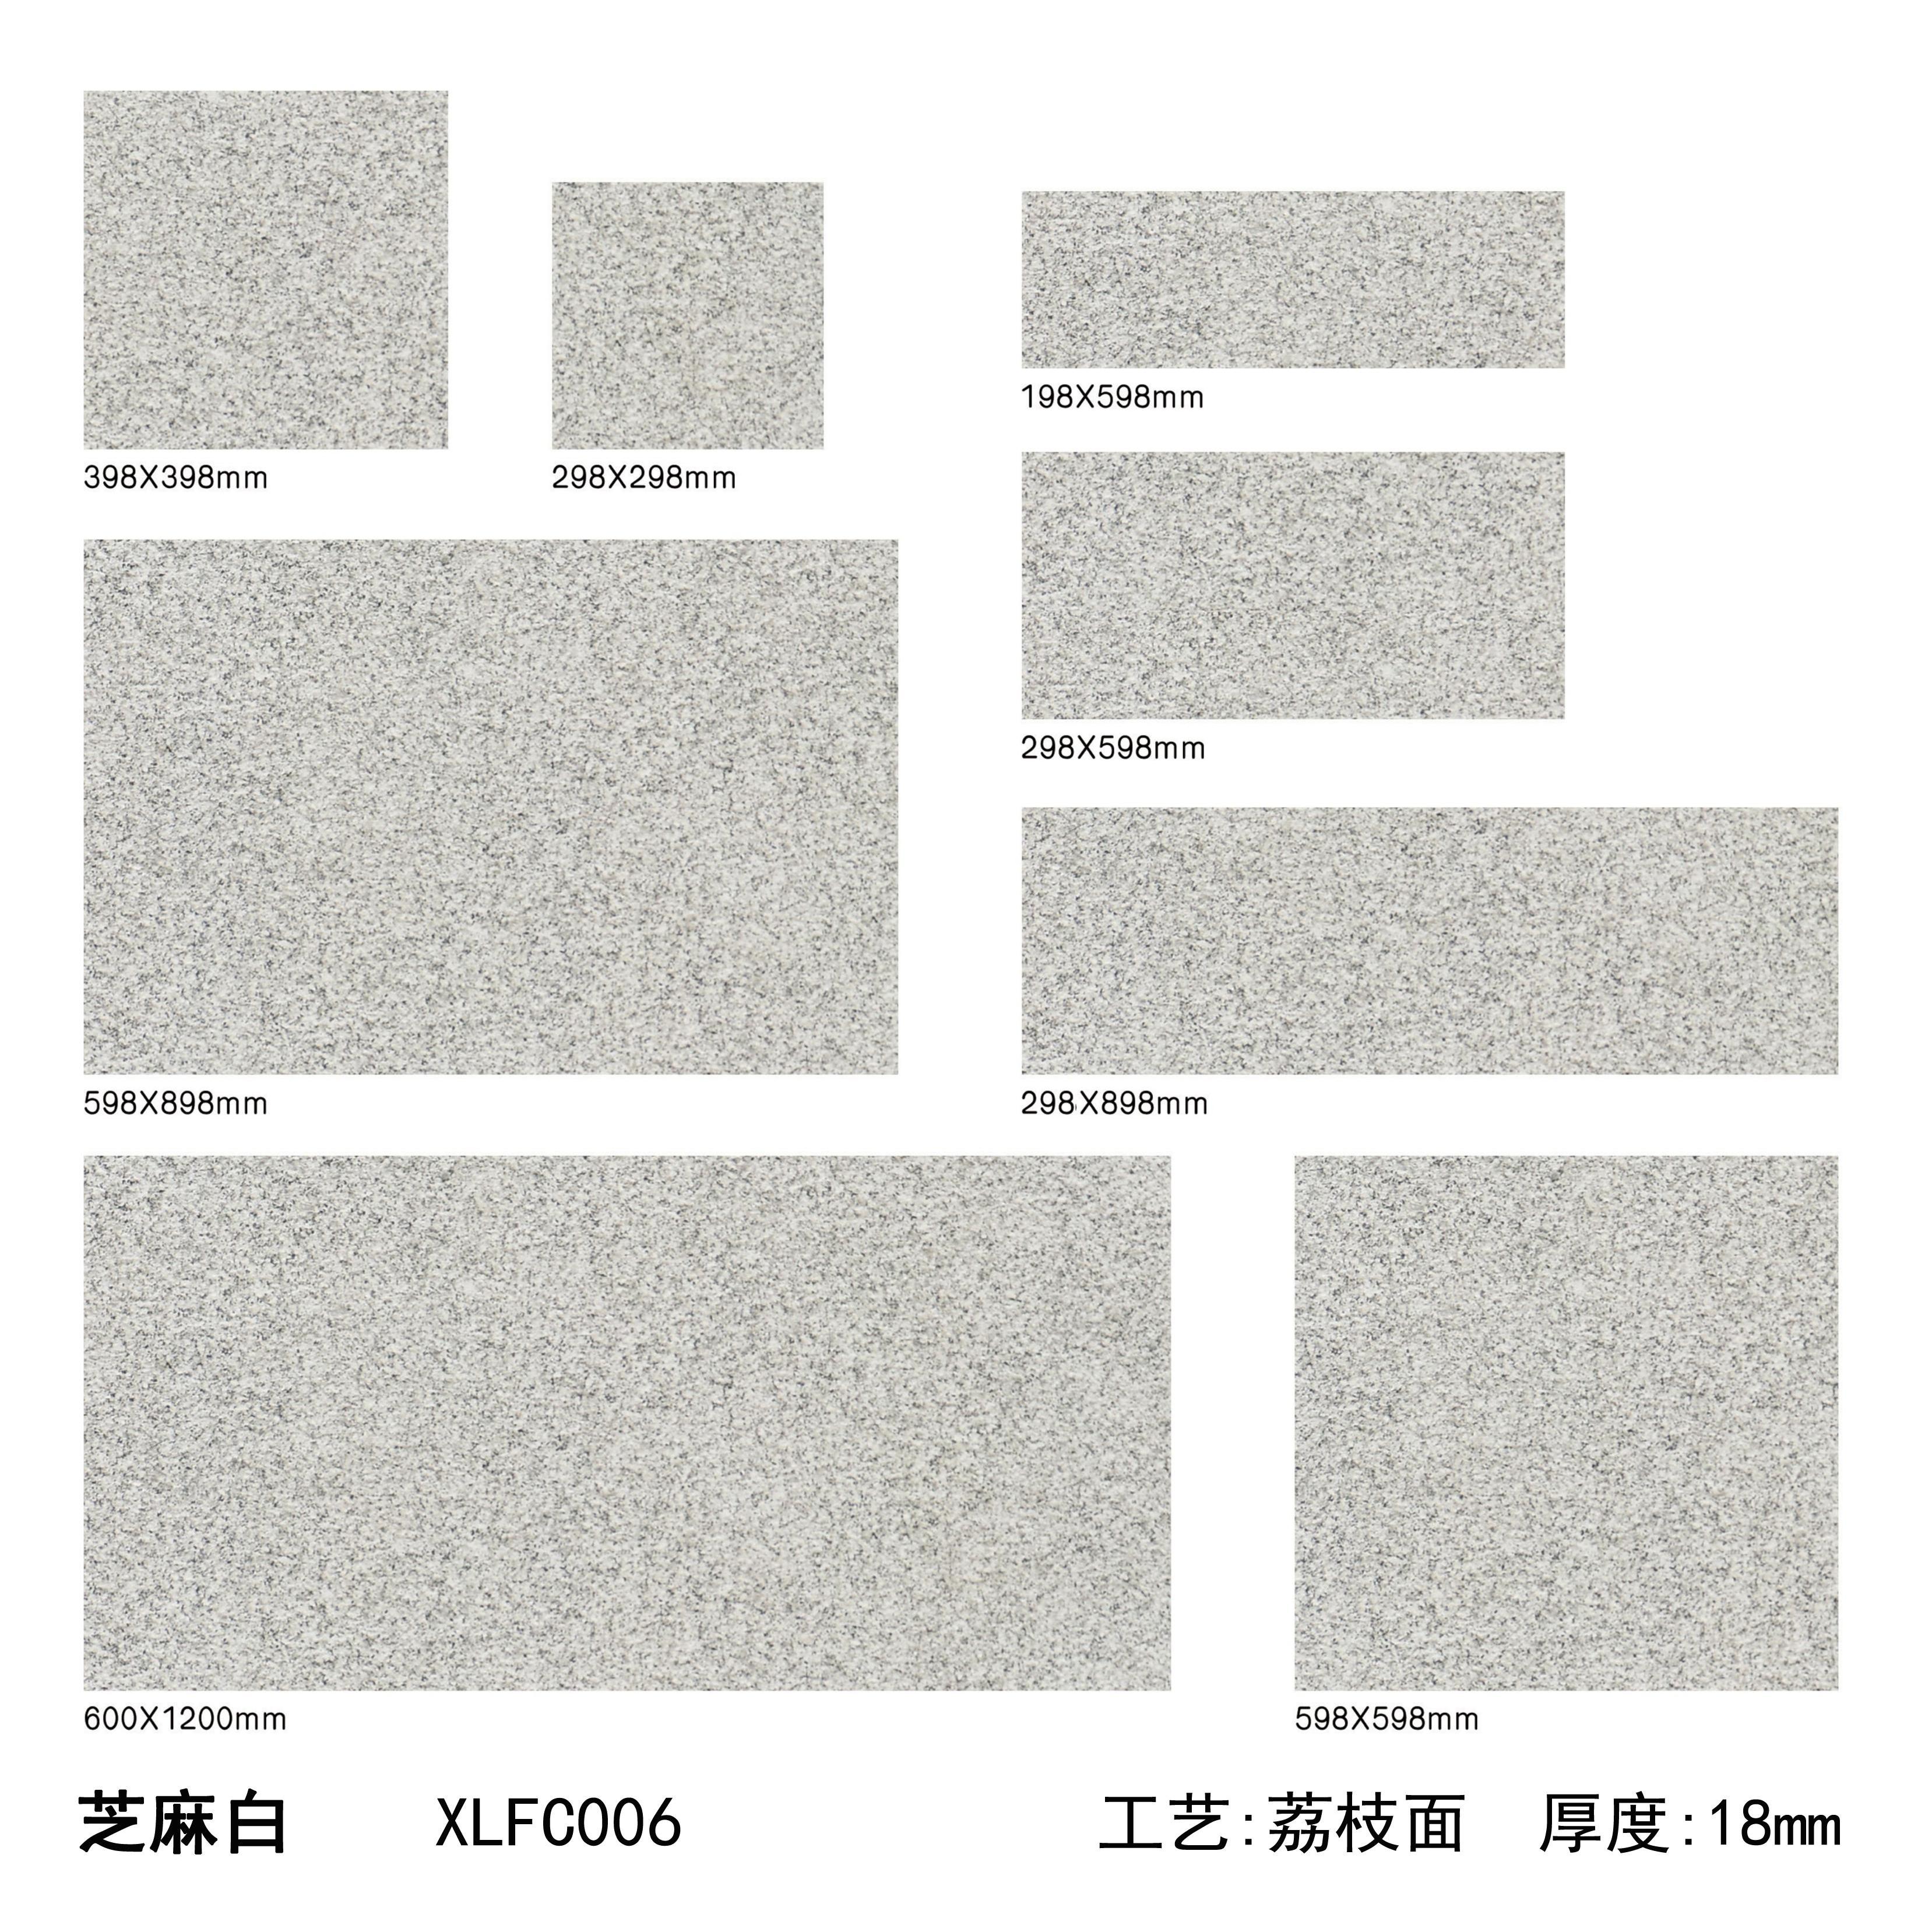 芝麻白PC砖（06）-南安市欣龙建材发展有限公司